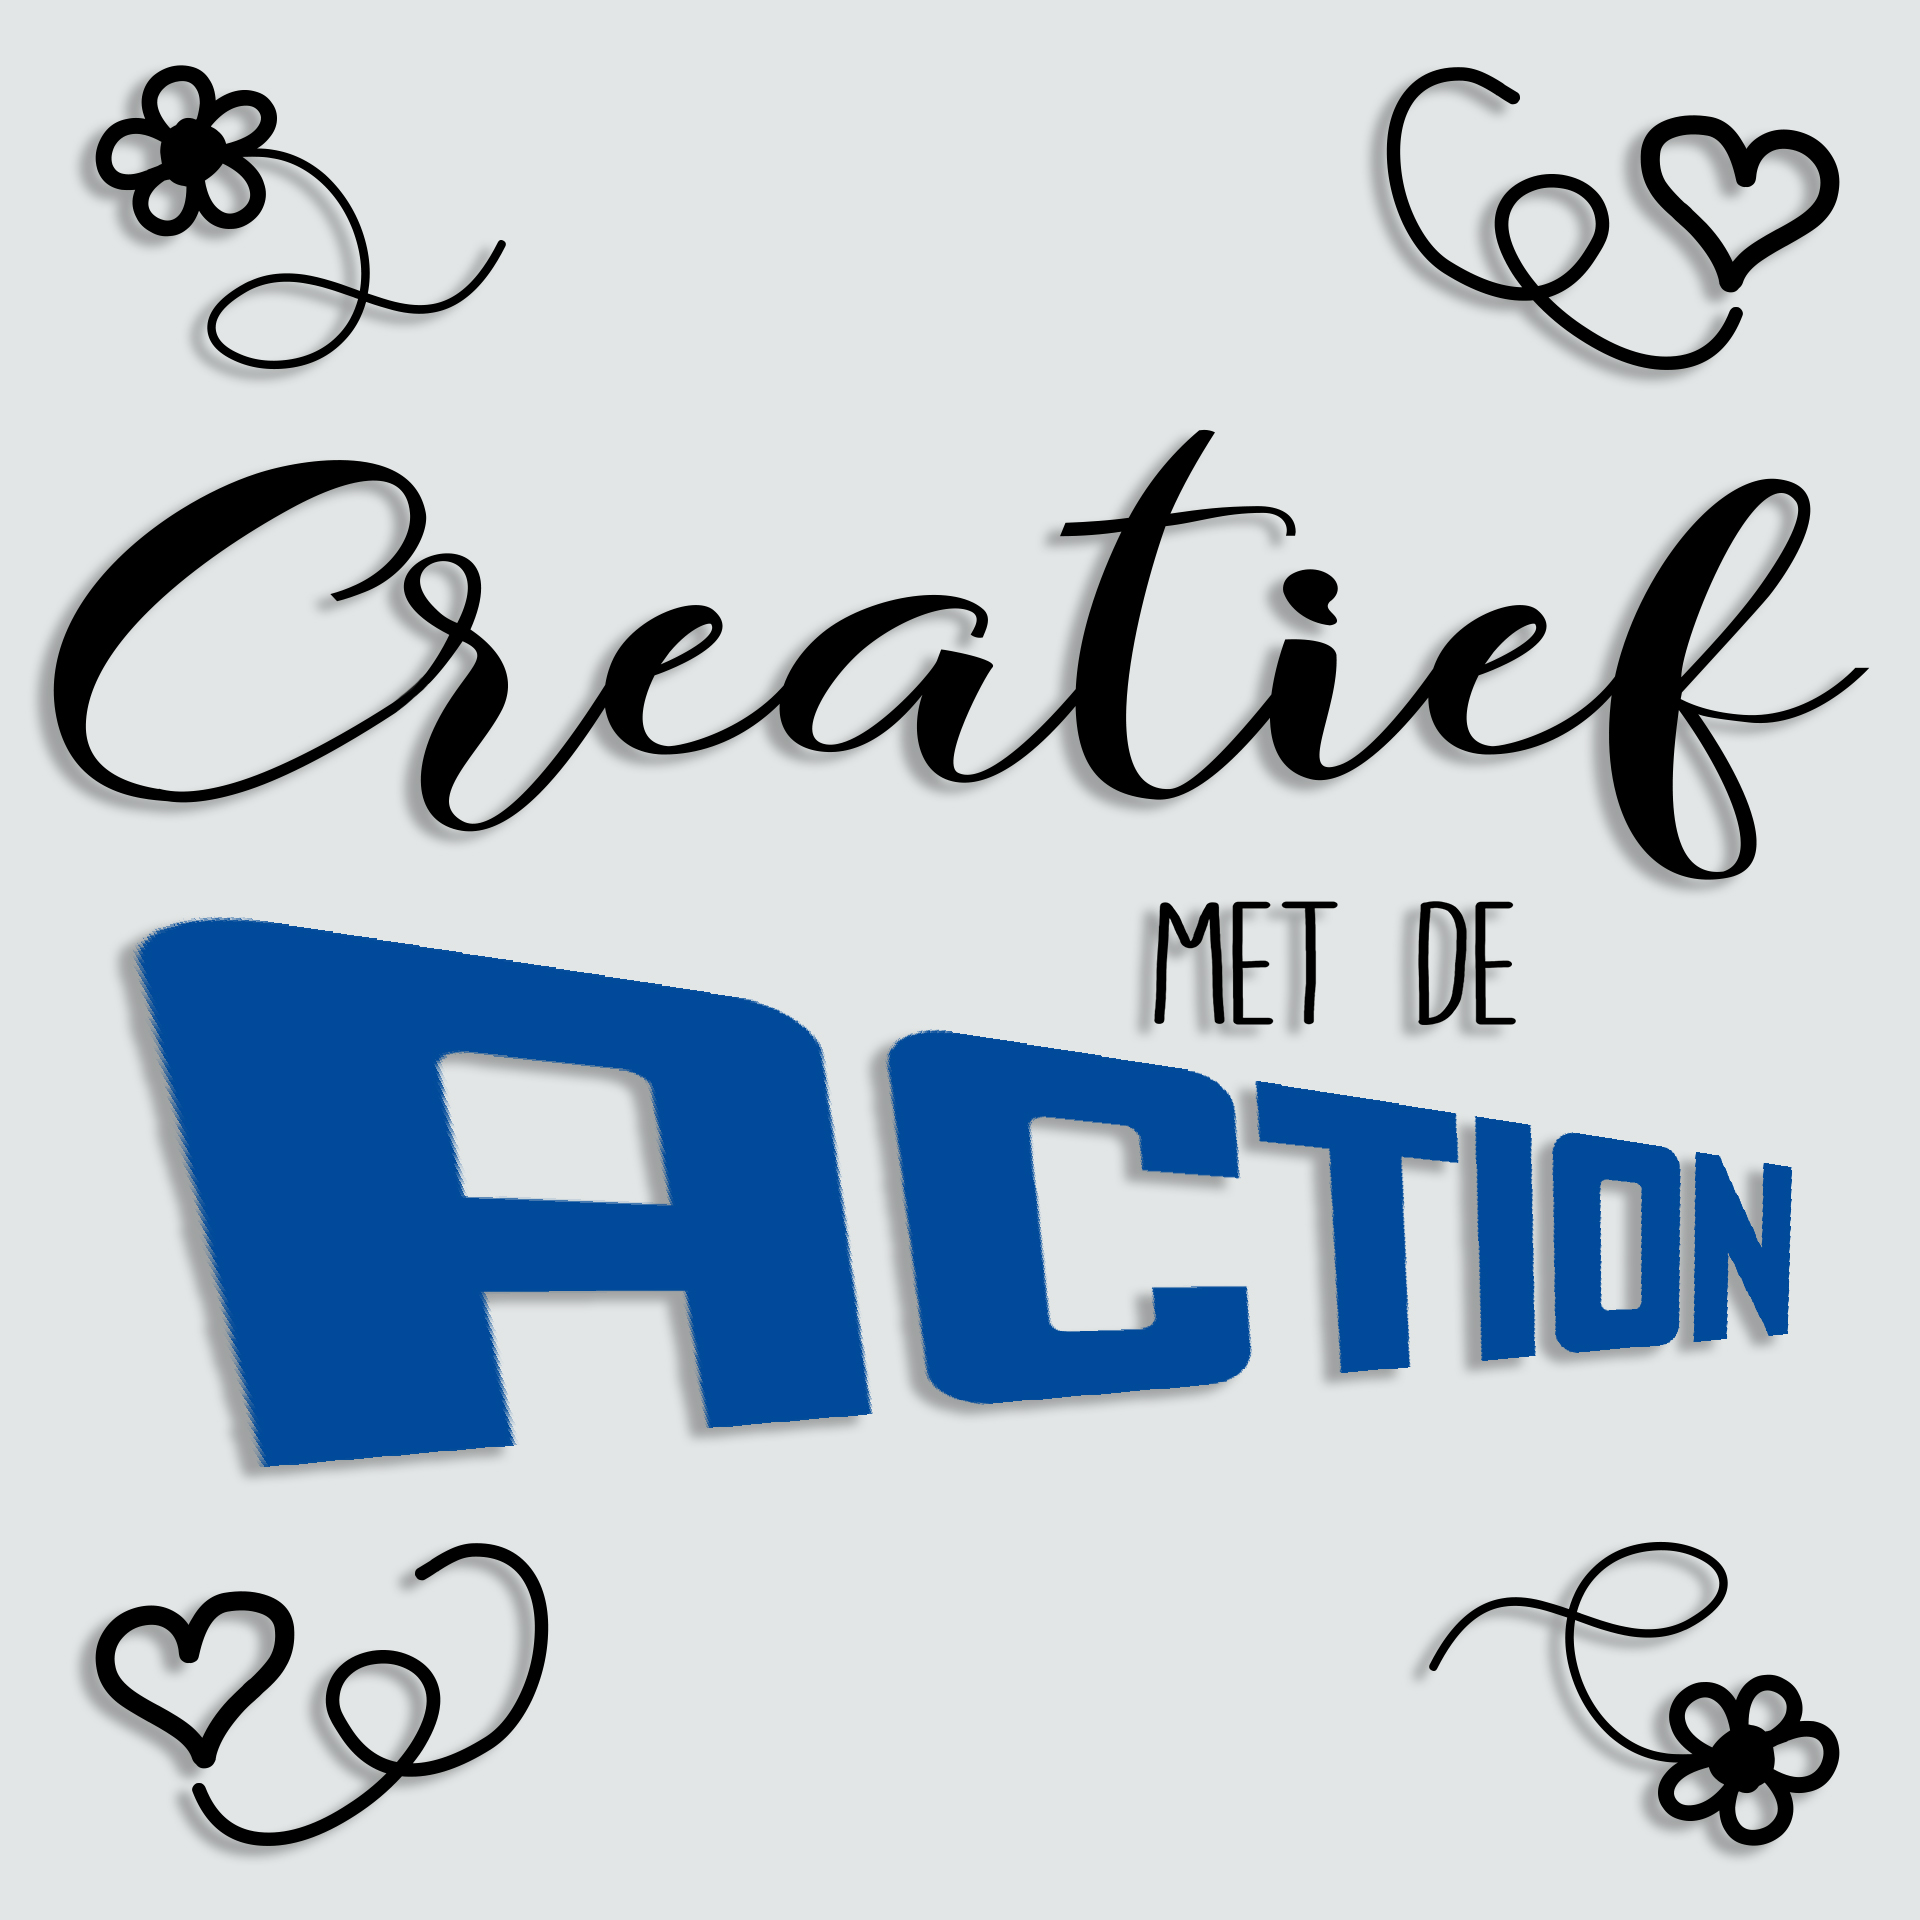 Pak om te zetten Roux zin Knutselen met de Action is leuk en goedkoop! - De website van  creatiefmetdeaction!